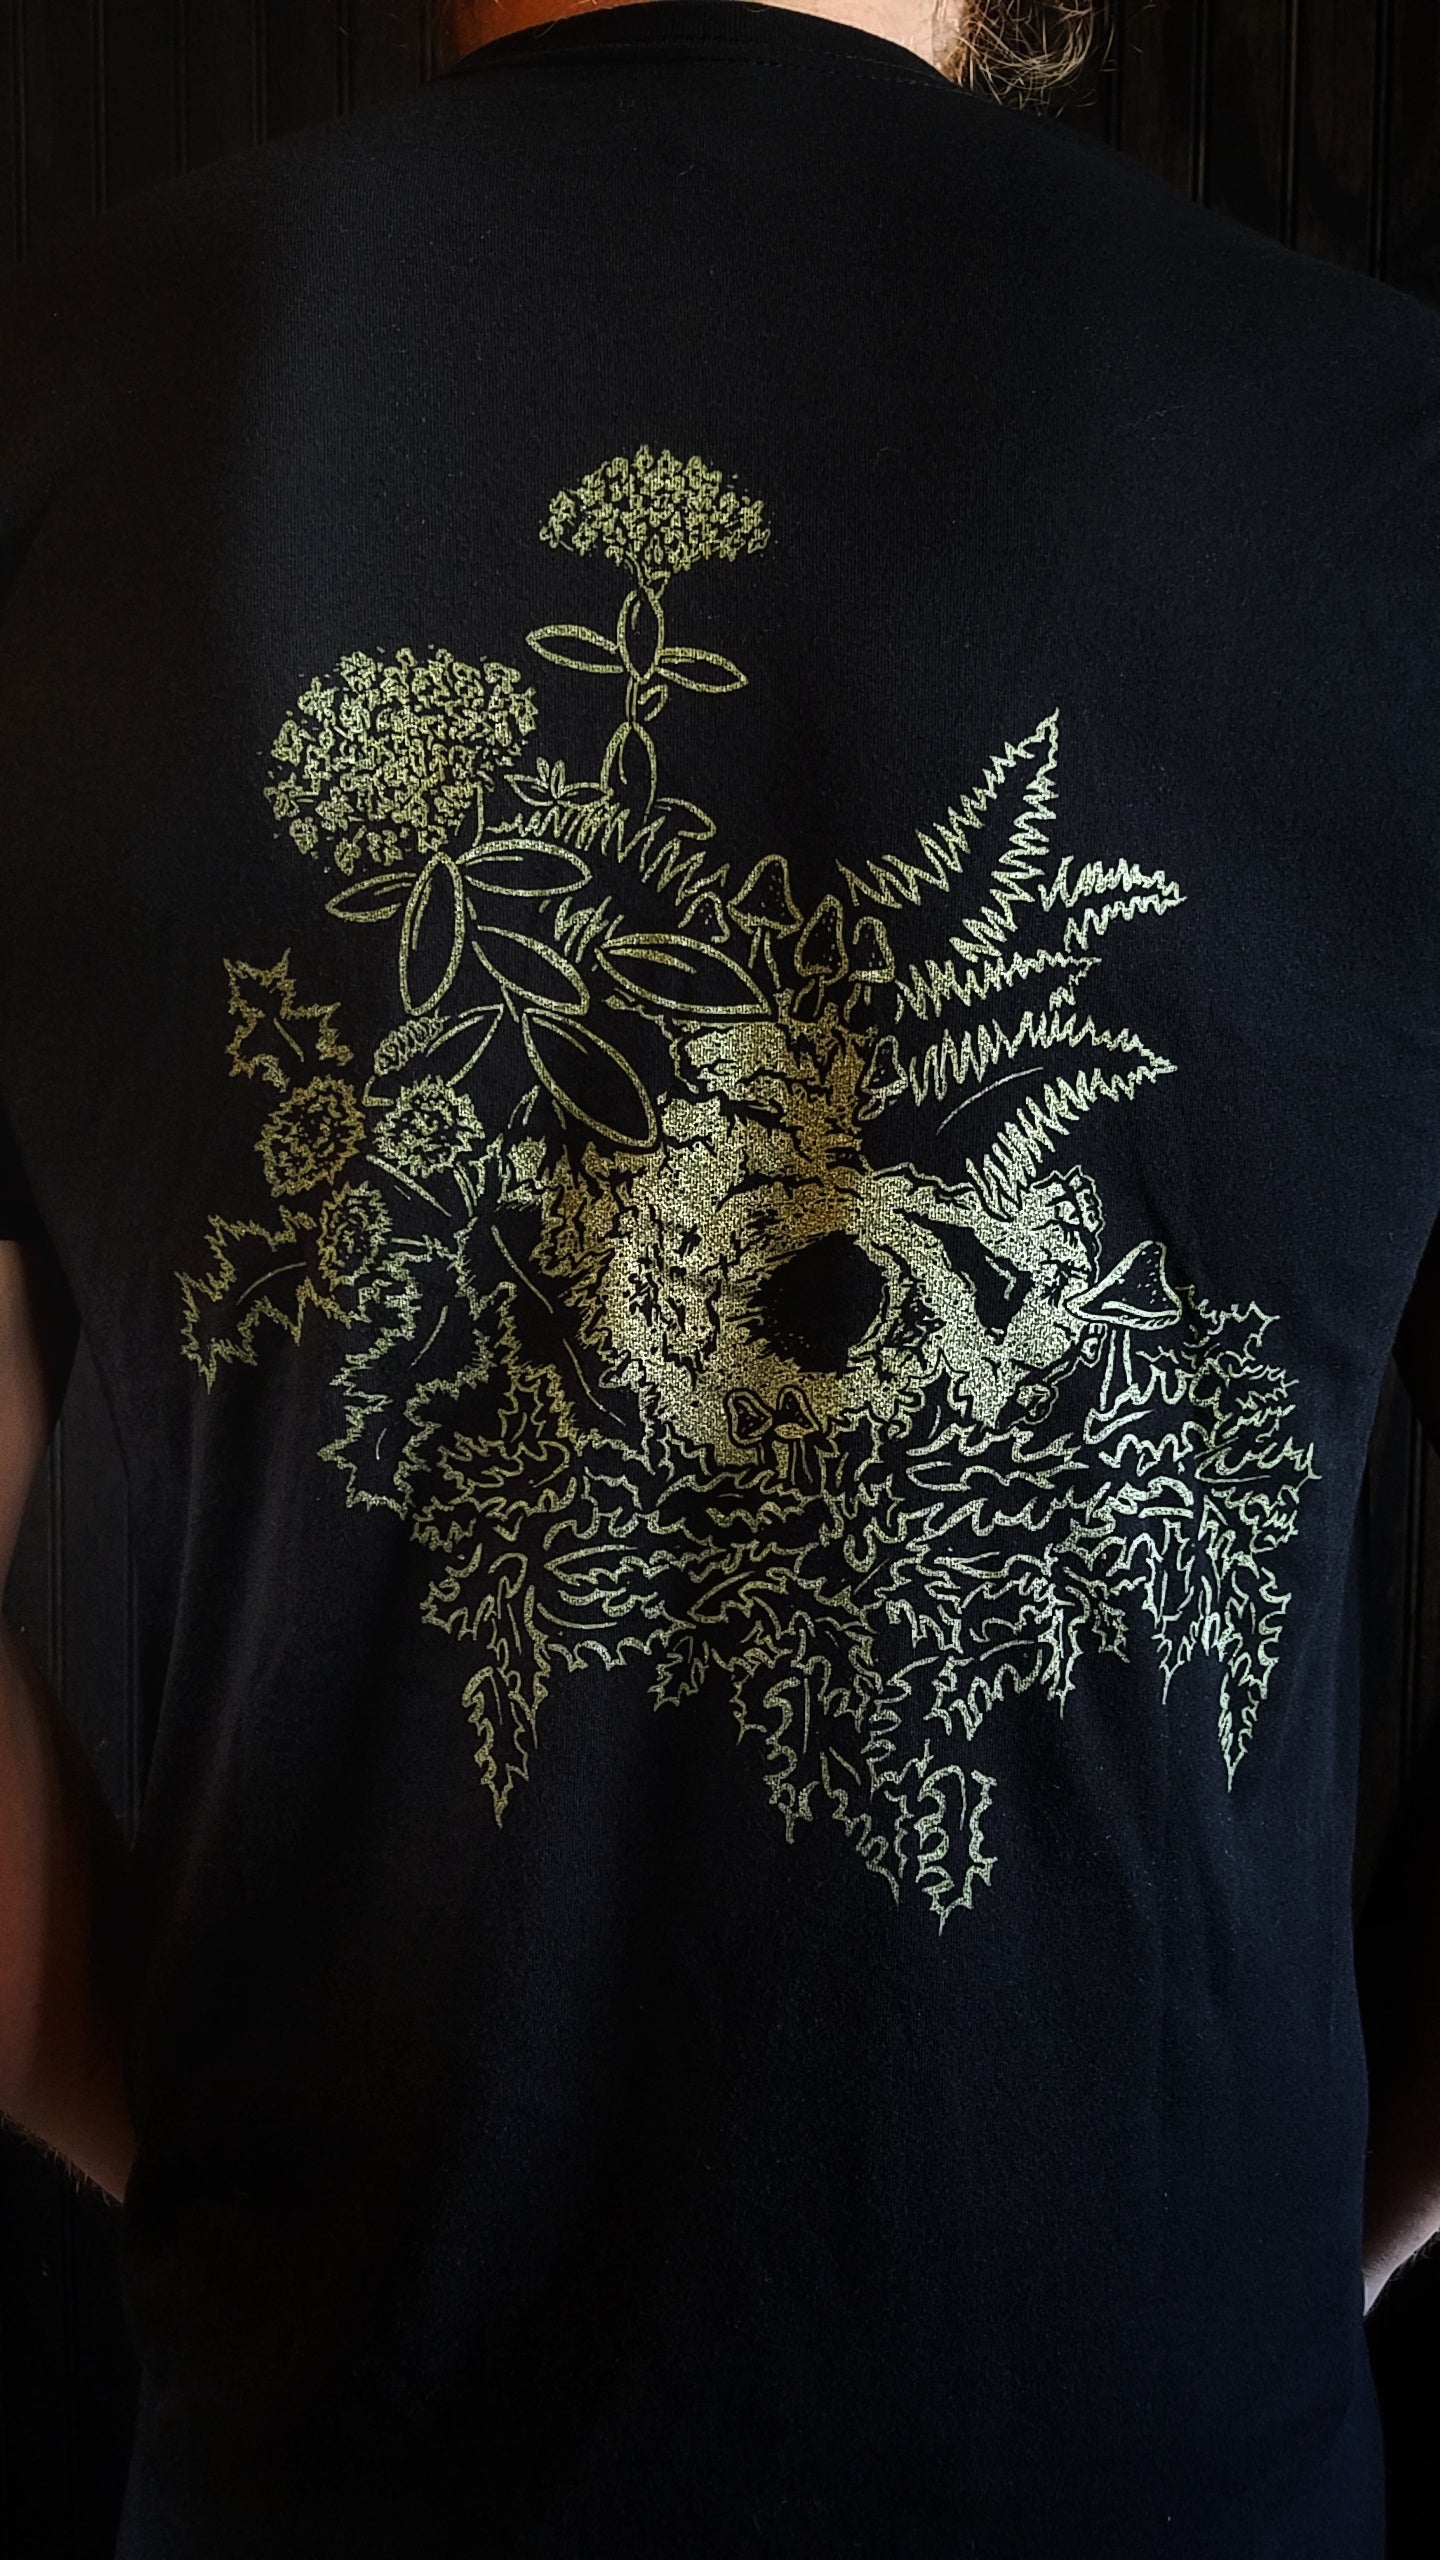 Hidden Skull T-Shirt - Recluse Roasting Project 